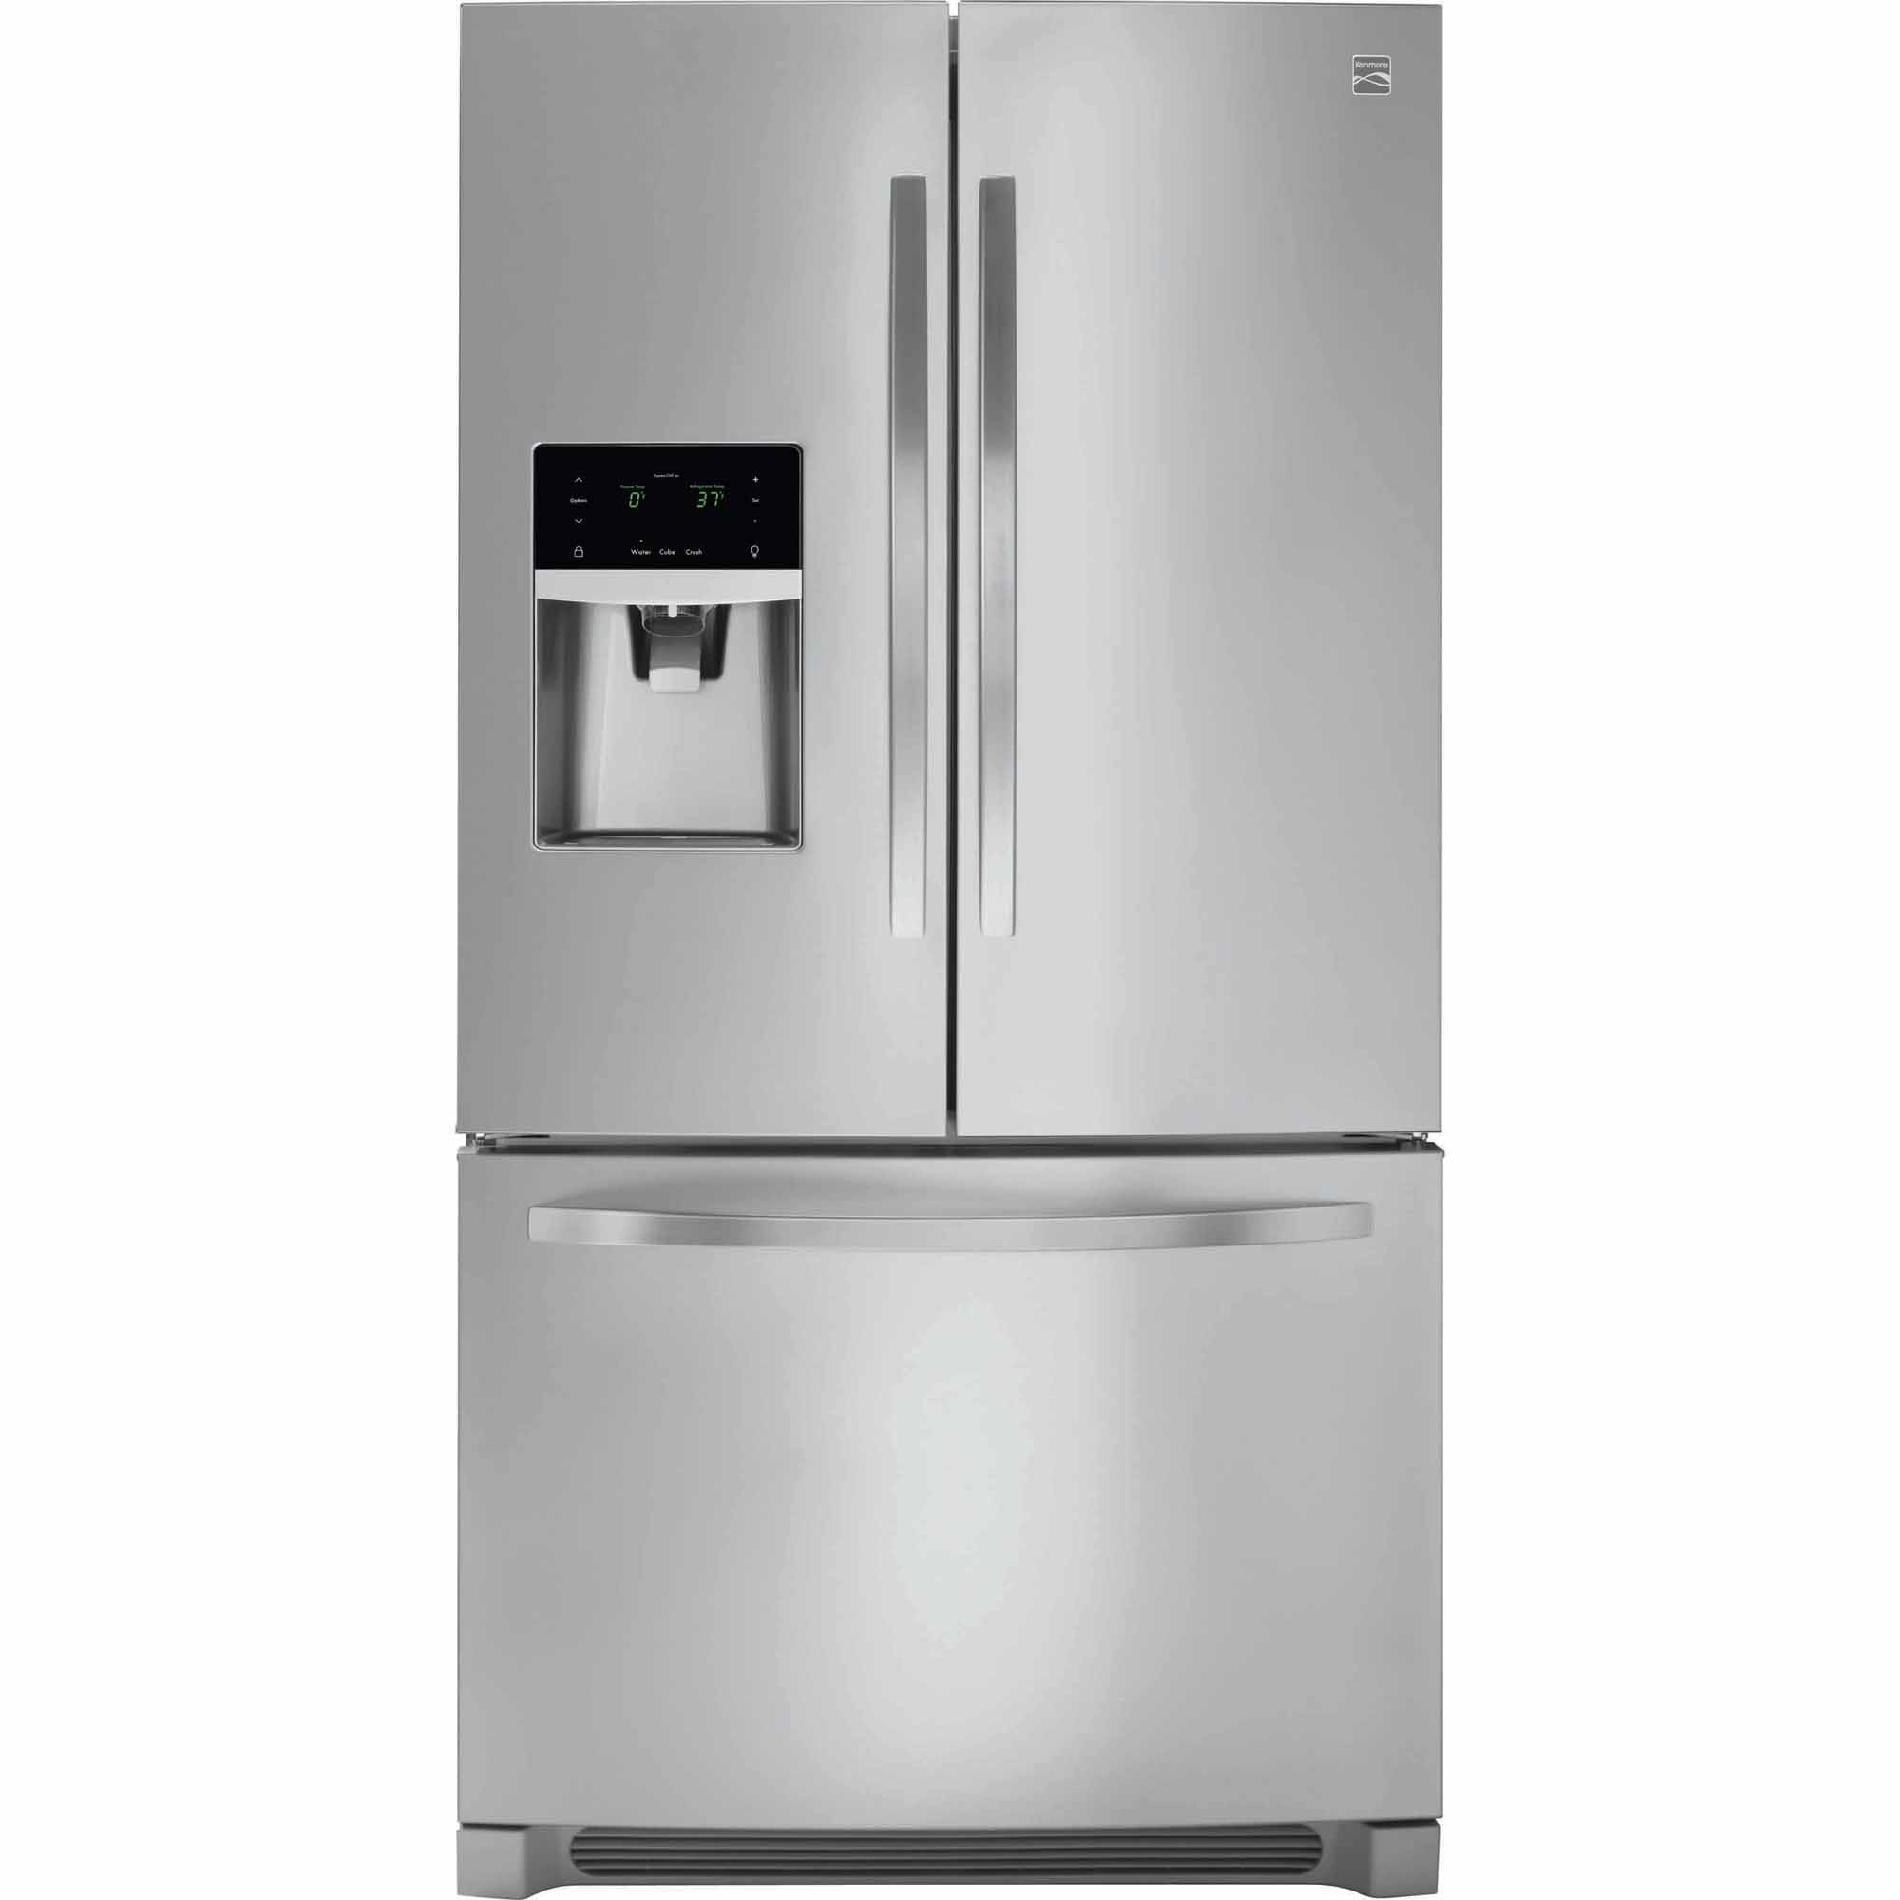 Kenmore 70443 21.9 cu. ft. Counter-Depth French Door Refrigerator